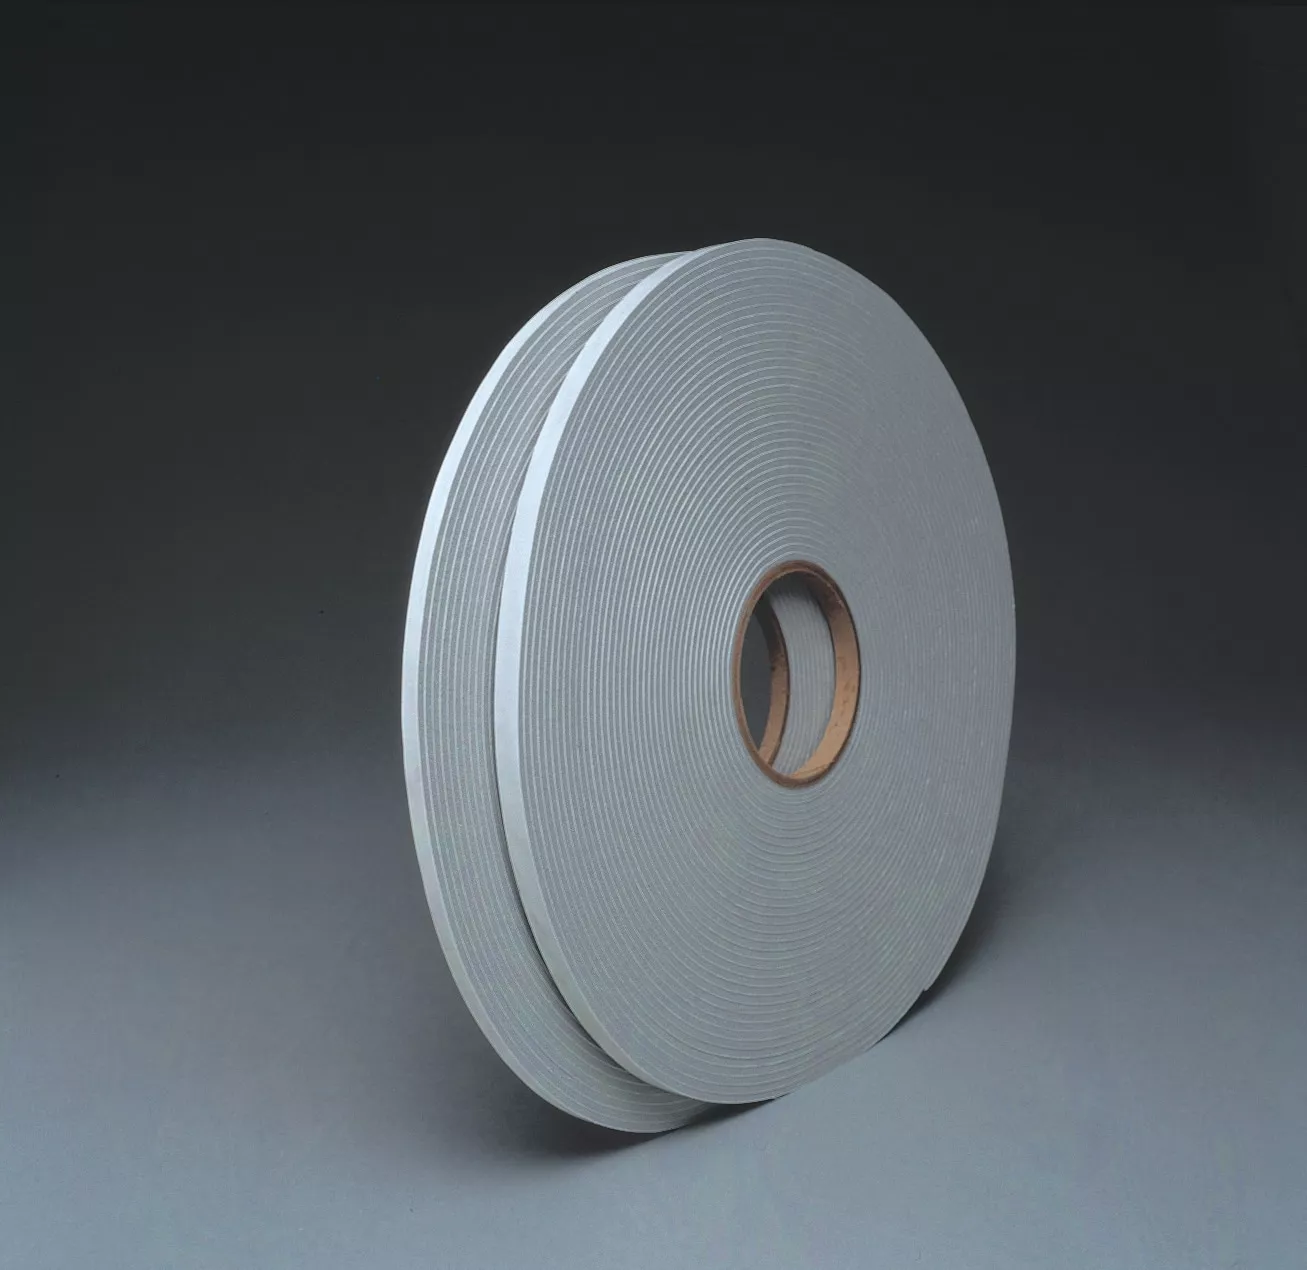 3M™ Venture Tape™ Vinyl Foam Tape 1718, Gray, 3/8 in x 75 ft, 125 mil,
32 Roll/Case